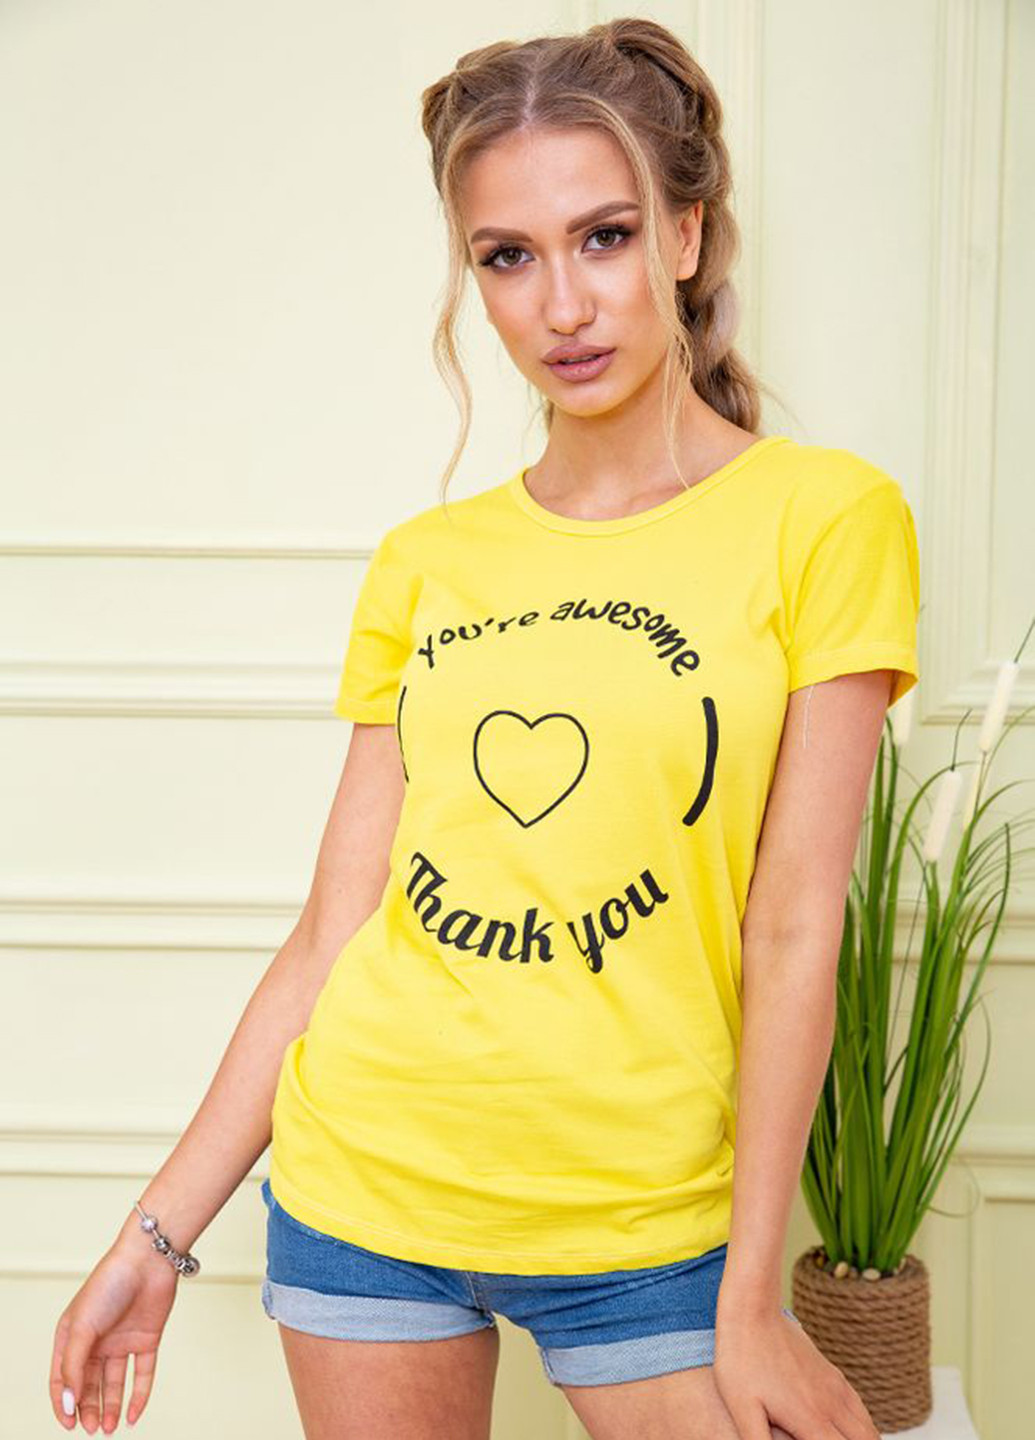 Желтая летняя футболка Ager